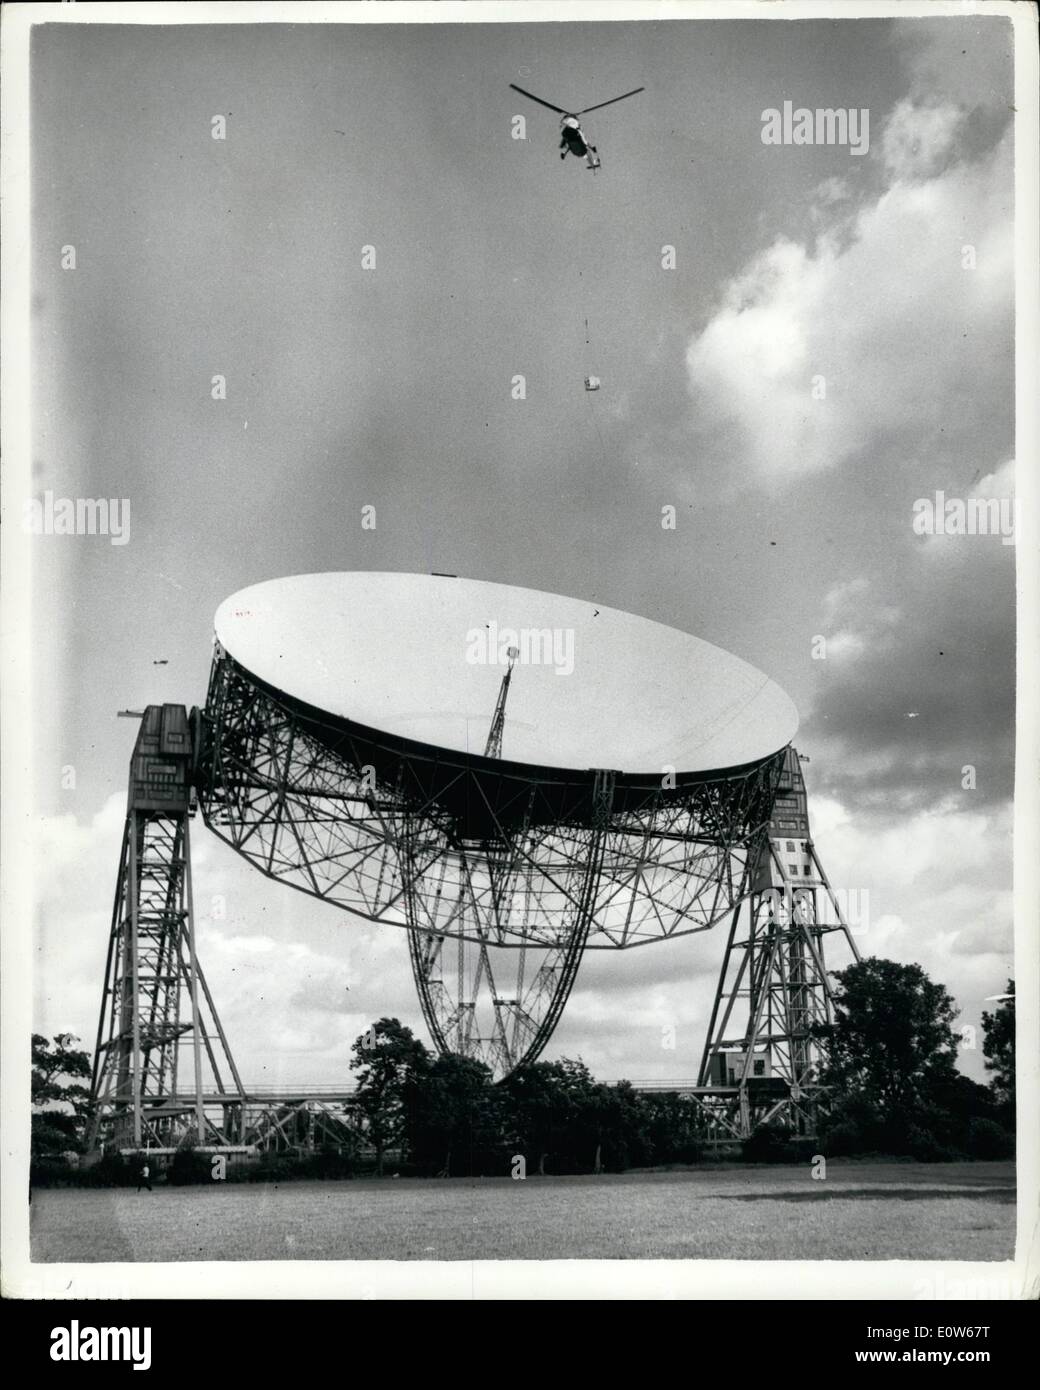 8. August 1961 - Helikopter löst knorrigen Aufgabe, Sender Schüssel mit Teleskop am Jodrell Bank: ein Feuchtgebiet Helikopter war im Einsatz bei Jodrell Bank heute Nachmittag für die knifflige Aufgabe, einen Funk-Sender aus der Schüssel des riesigen Teleskops dort. In der Regel hätte die Entfernung von der 10-Kilowatt-Sender - verliehen von den USA für die Überwachung der amerikanischen Satelliten-Signale - erfordert den Abbau des Bogens Teleskope. Jedoch den Einsatz eines Hubschraubers als eine improvisiert '' Sky Sprunggelenk '' machte den Job casier Stockfoto